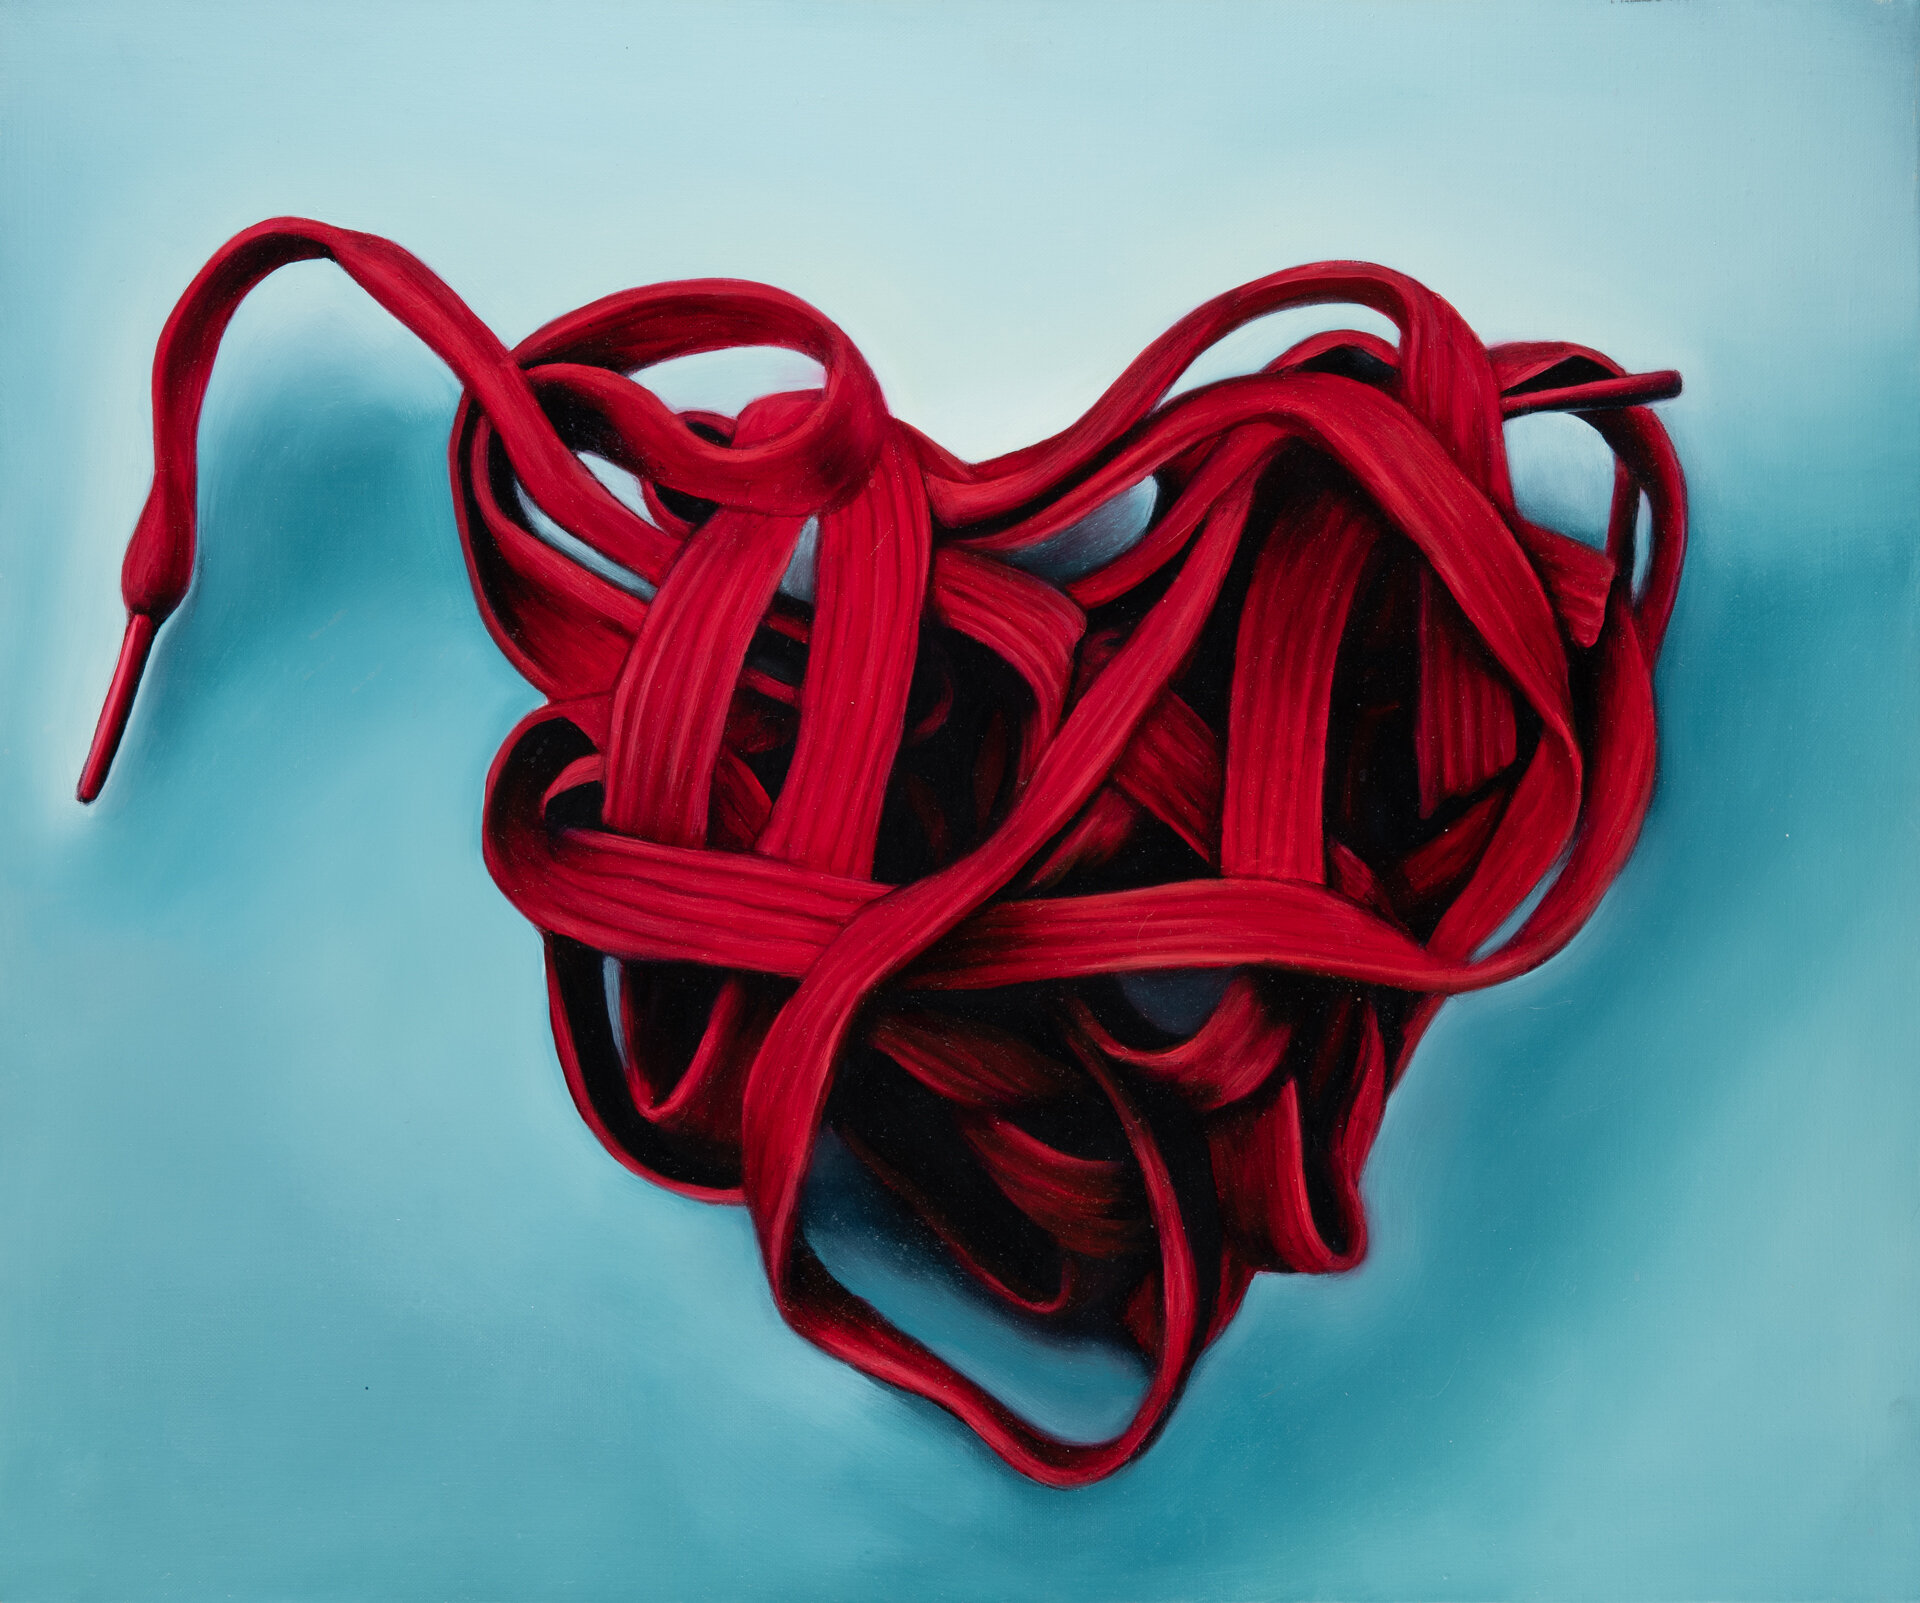 Heart Strings, 24" X 20", Oil on Linen, 2013